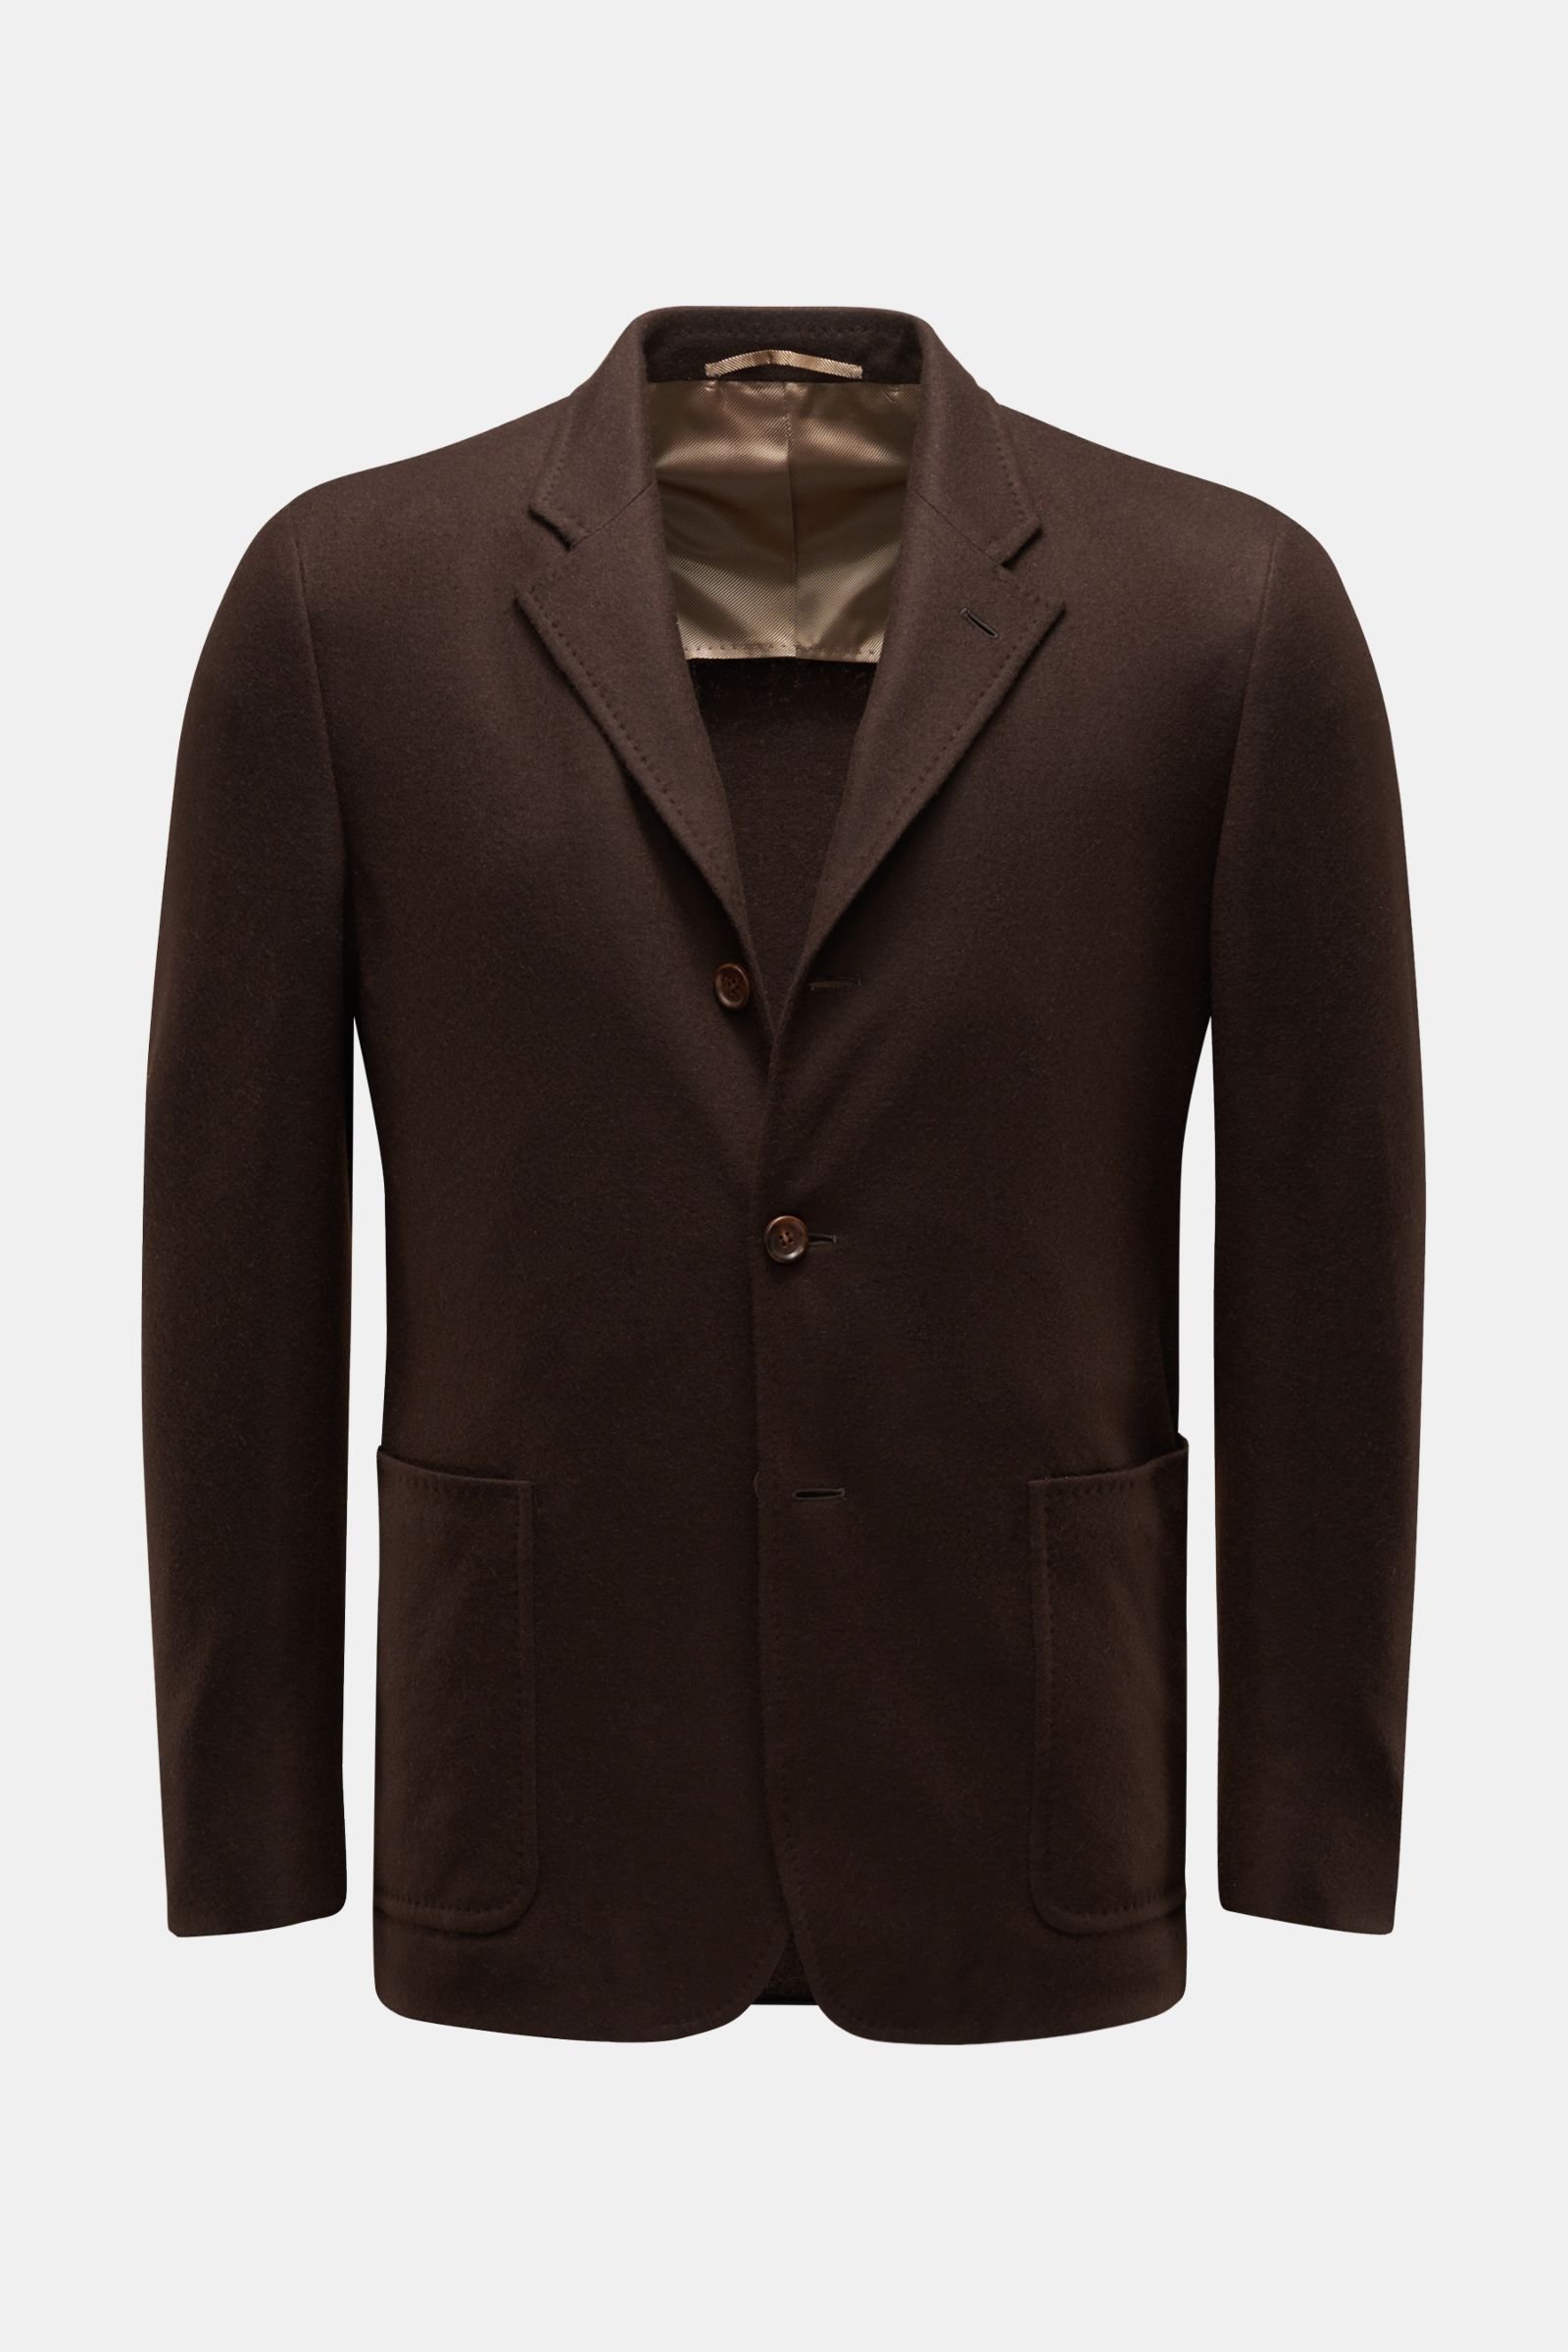 Cashmere knit blazer dark brown